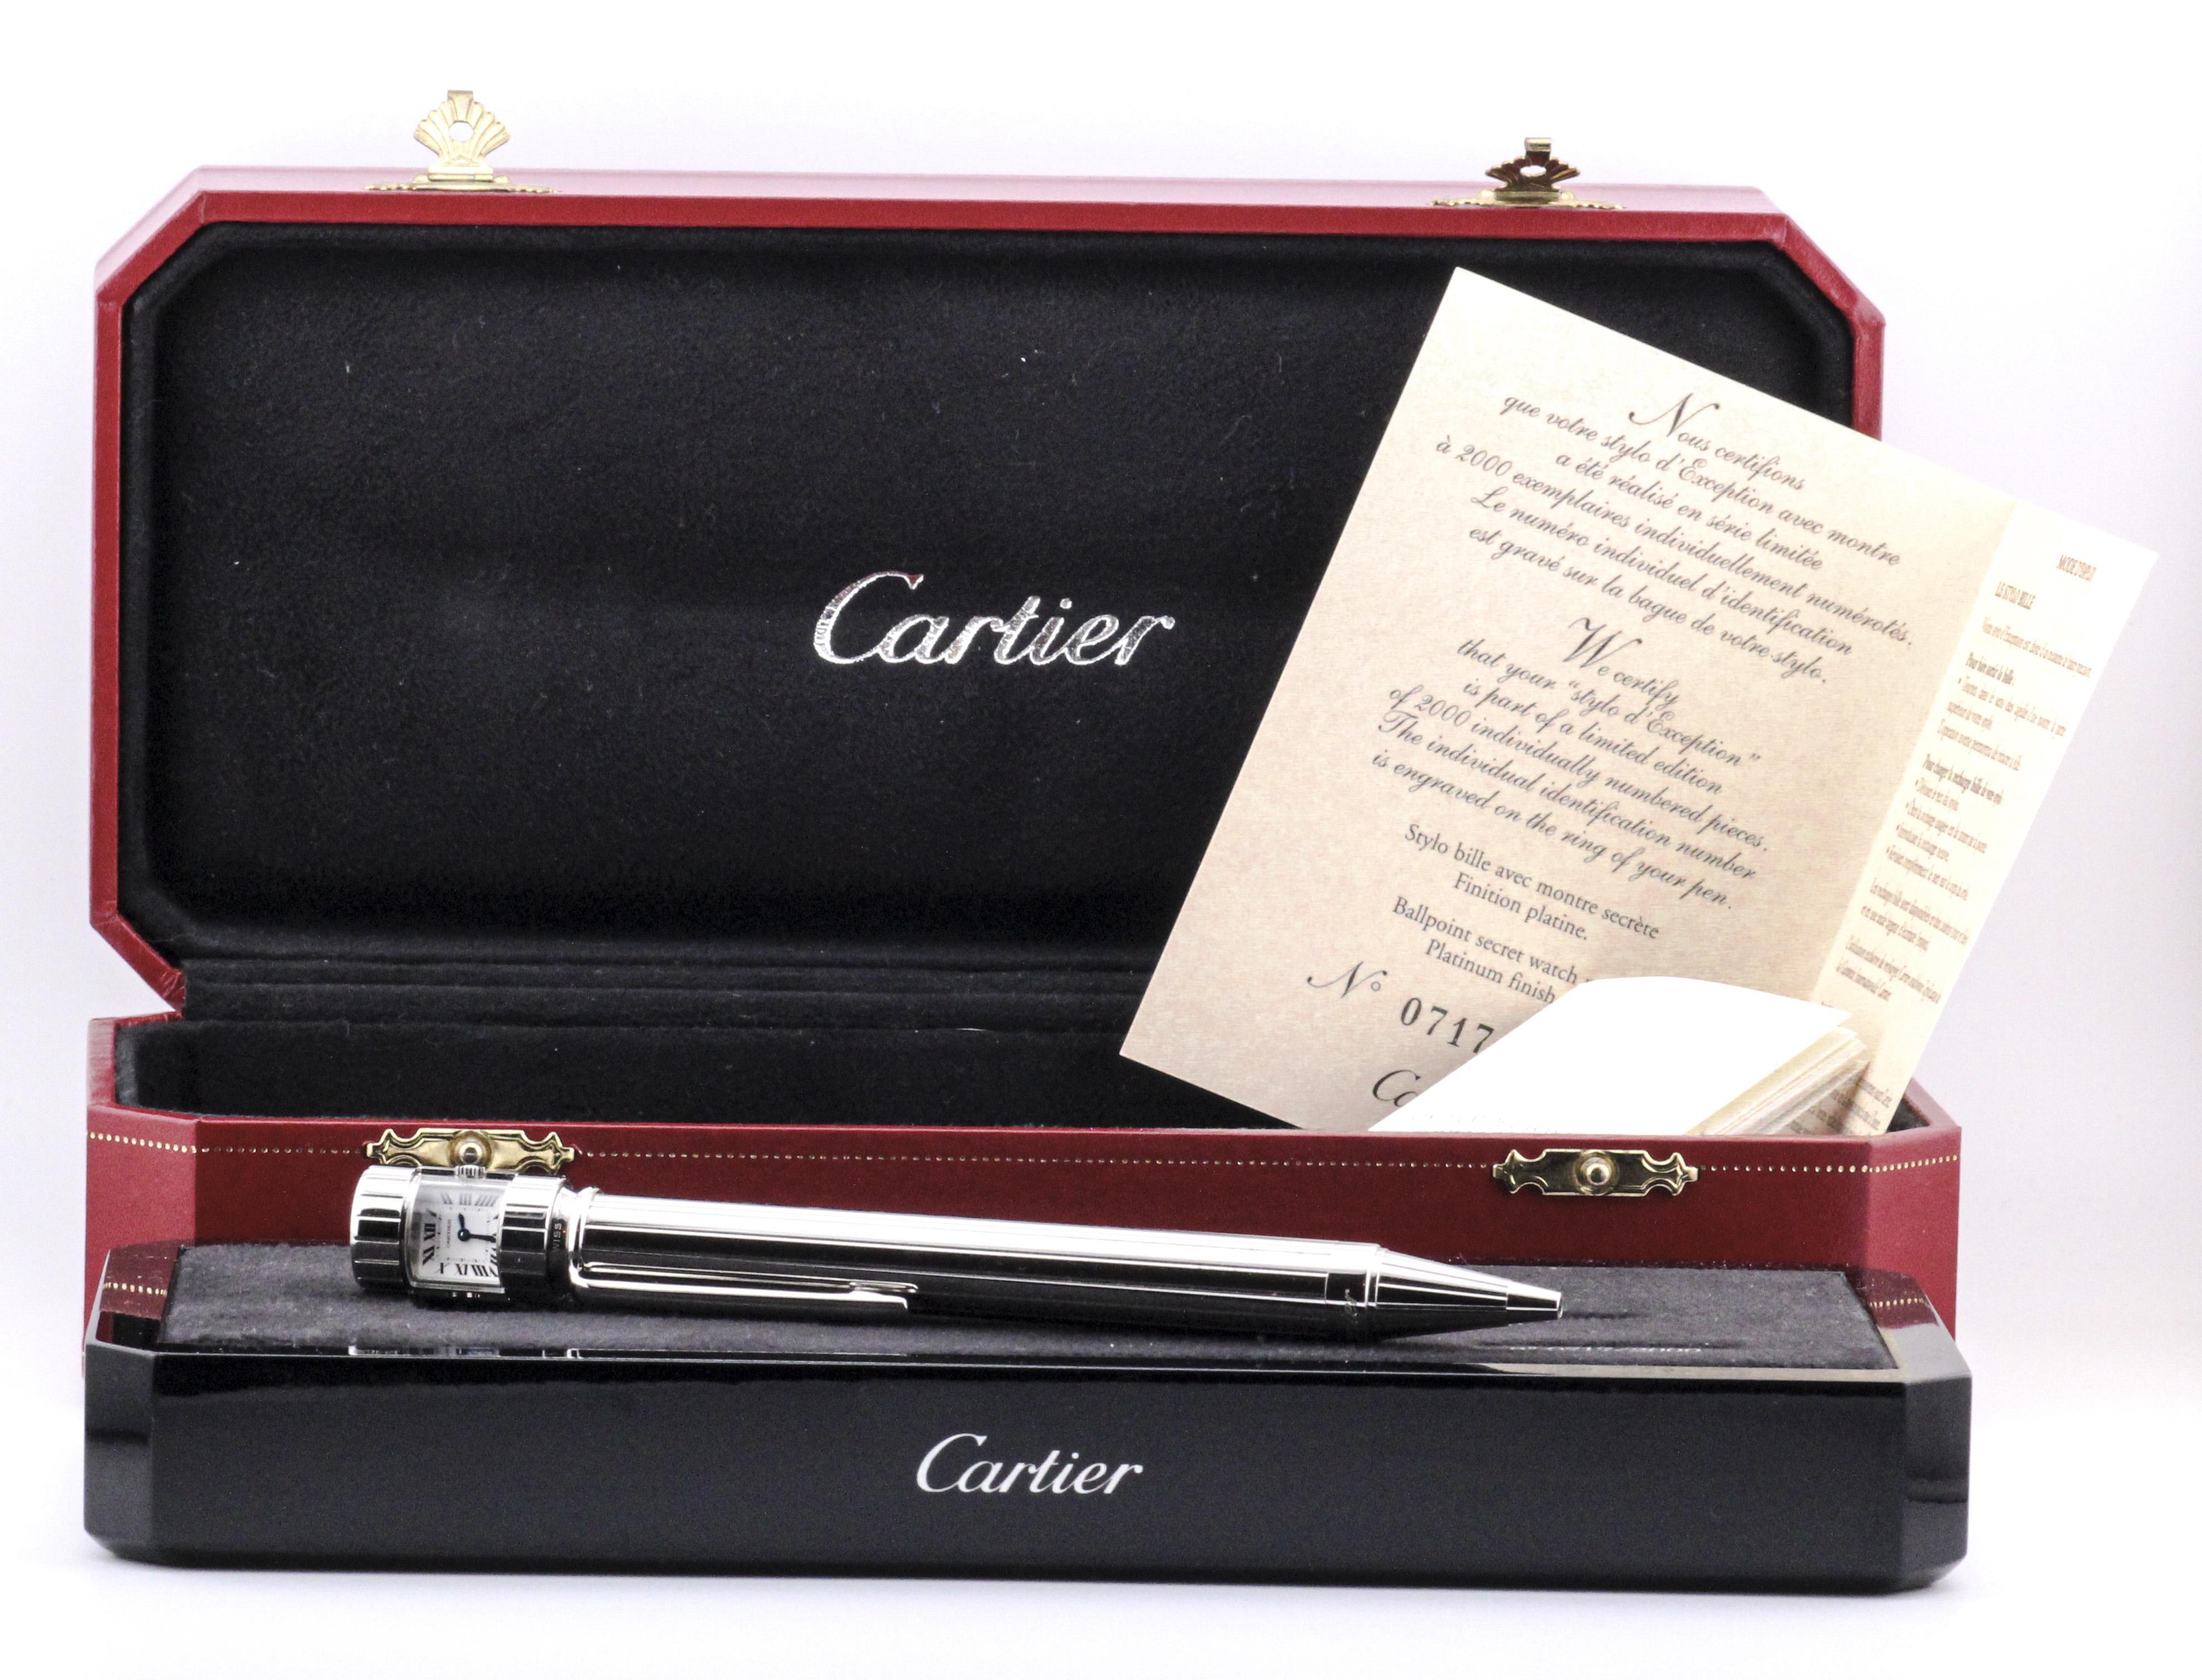 Voici le stylo à bille Cartier Edition Limitée, une fusion unique de savoir-faire et d'élégance intemporelle. Cet instrument d'écriture exceptionnel incarne l'héritage de Cartier en matière de luxe et d'innovation, offrant un mélange distinctif de